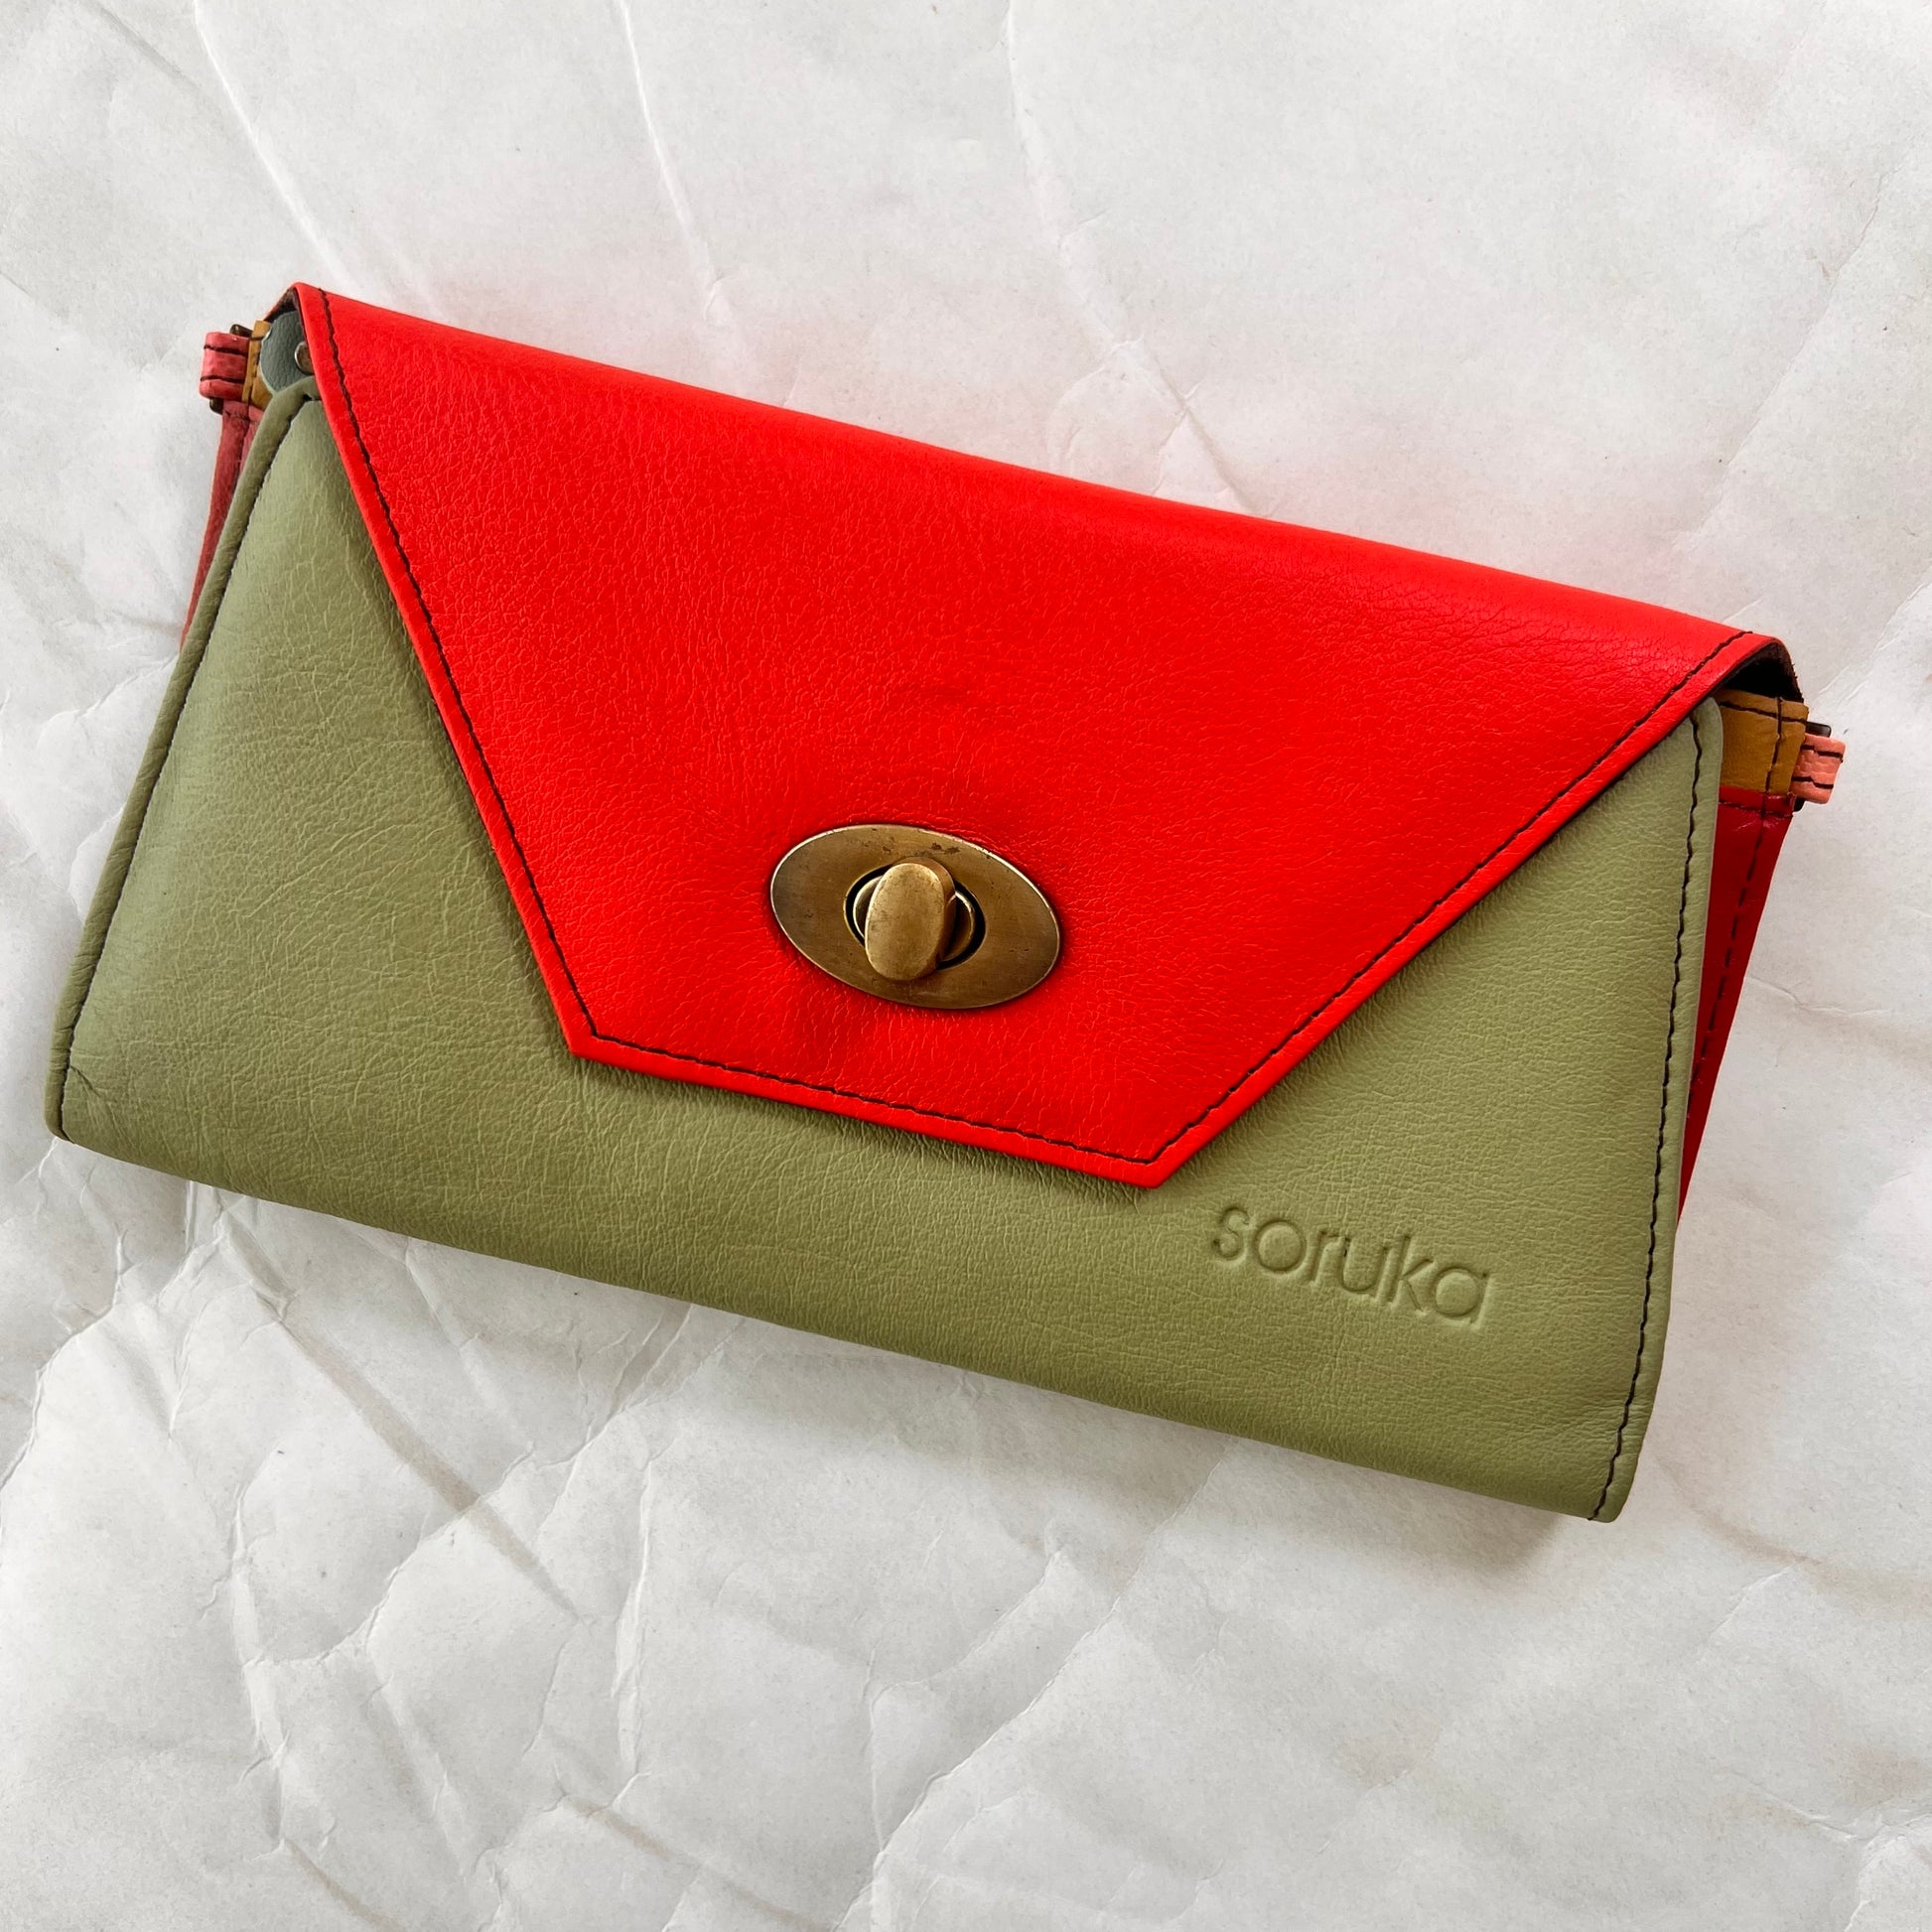 green secret clutch wallet with orange flap.